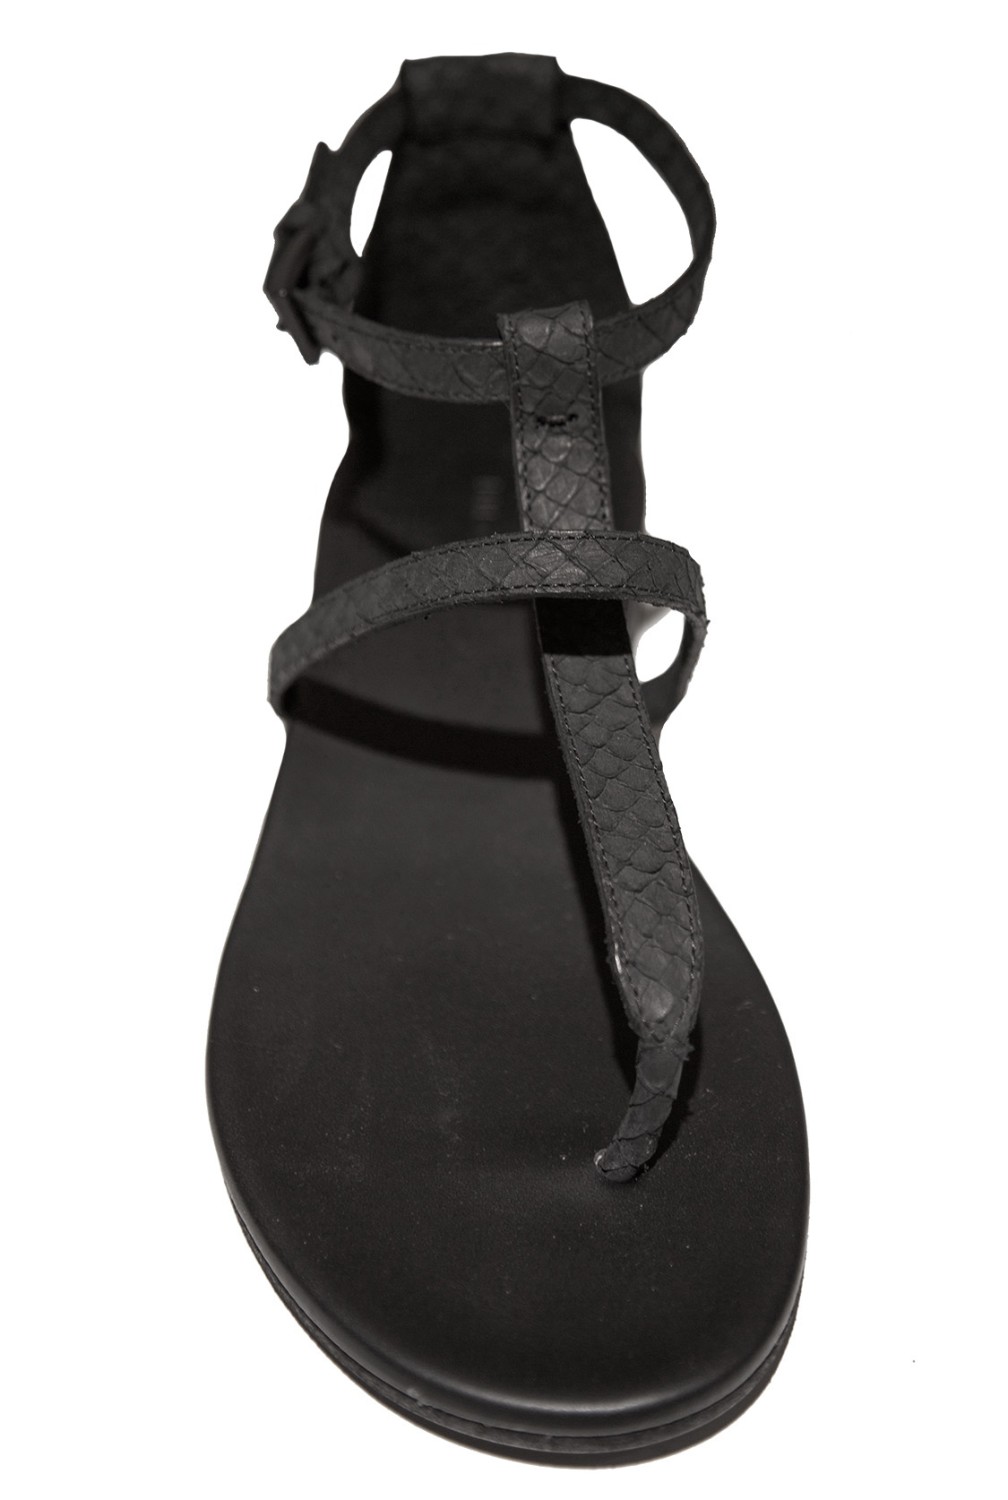 shop Del Carlo  Scarpe: Infradito Del Carlo, color nero, in pelle stampata pitone, allacciato alla caviglia con fibbia in metallo, suola in pelle.

Composizione: 100% pelle.
 number 1217